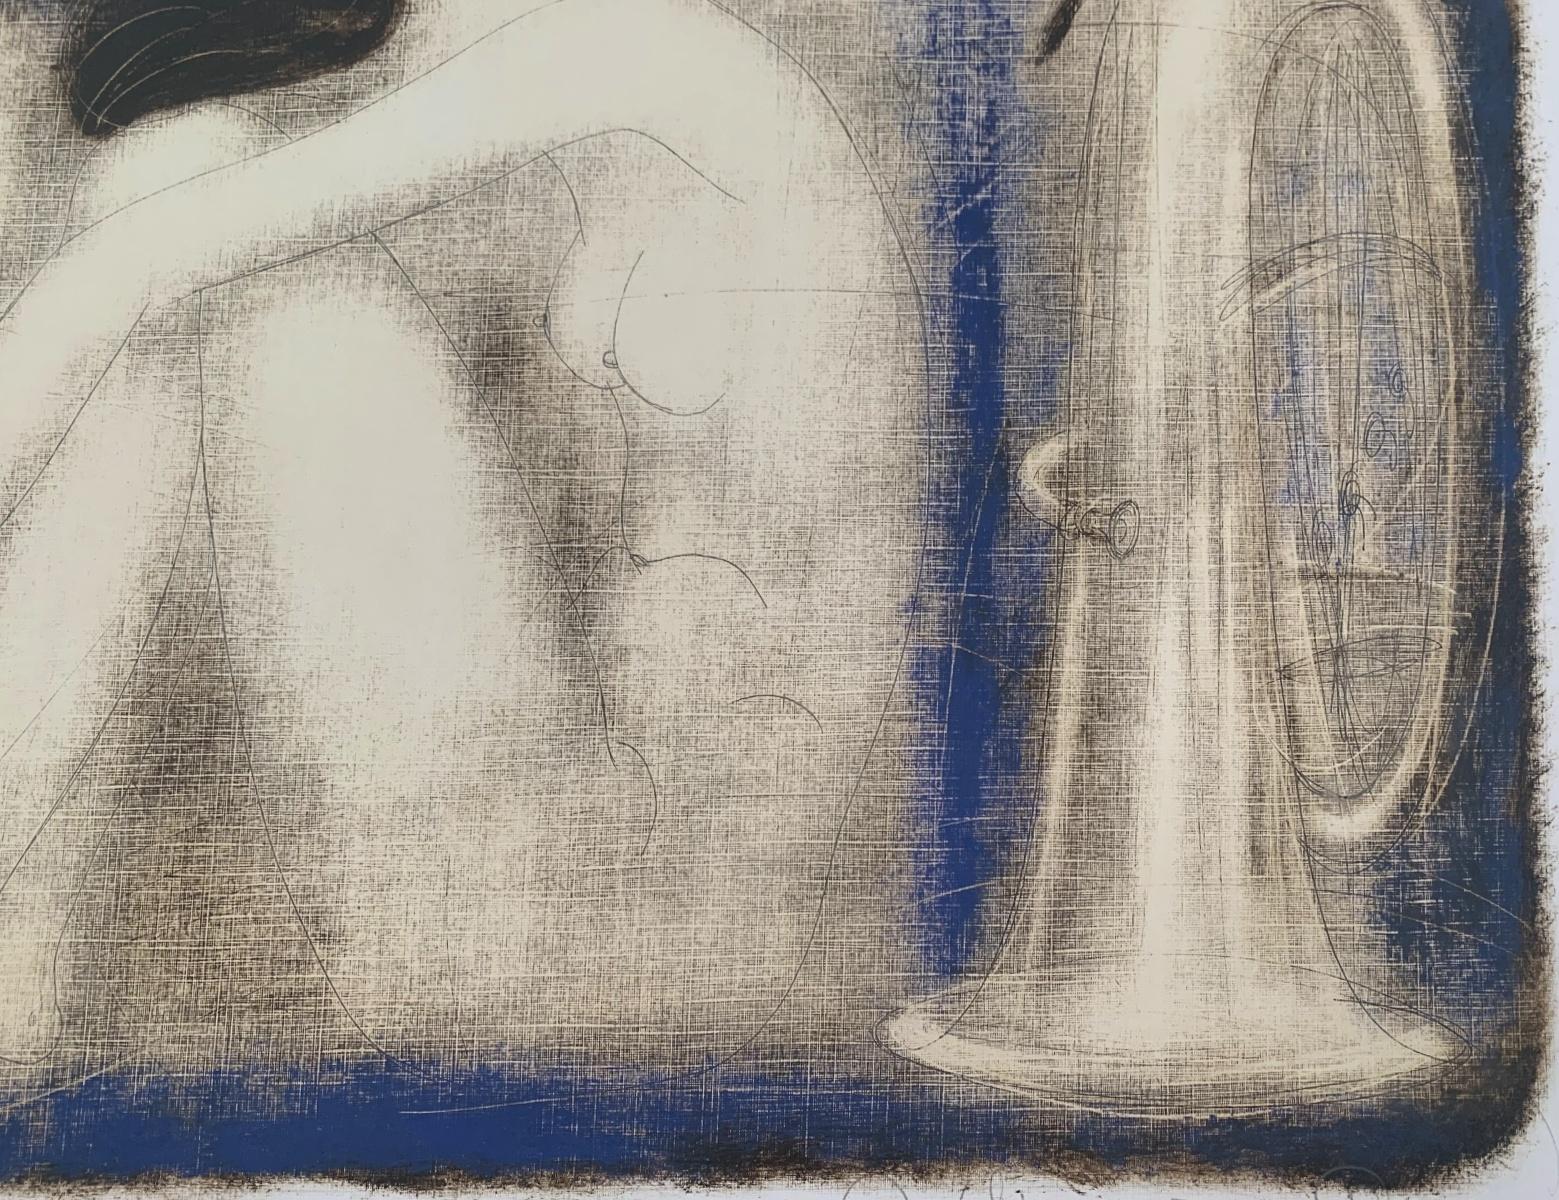 Zeitgenössischer figurativer Akt-Monotypie-Druck des weißrussischen Künstlers Siergiej Timochow. Der Druck zeigt eine Frau mit einem Schlauch. Die Komposition ist monochromatisch in Blau gehalten. Das Papier/Karton ist strukturiert. 

Siergiej